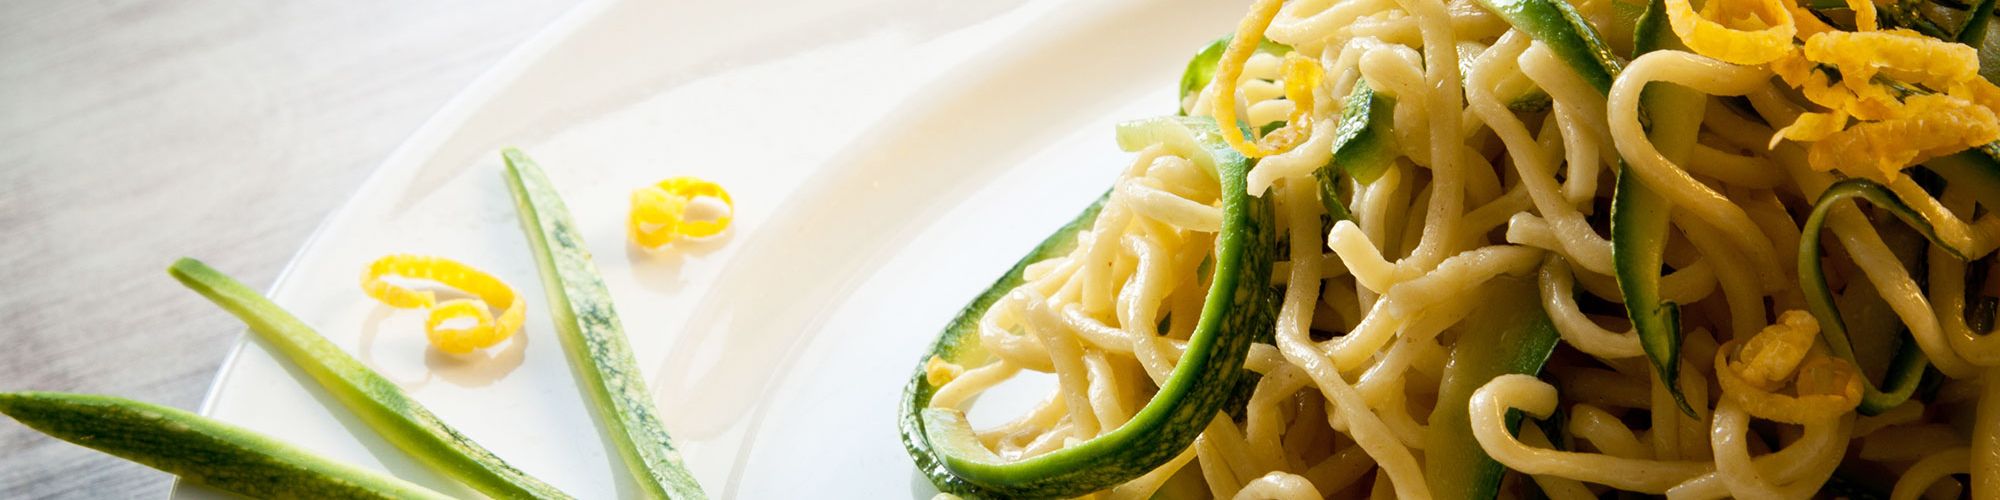 ricetta Tagliolini con zucchine e limone con pasta fresca